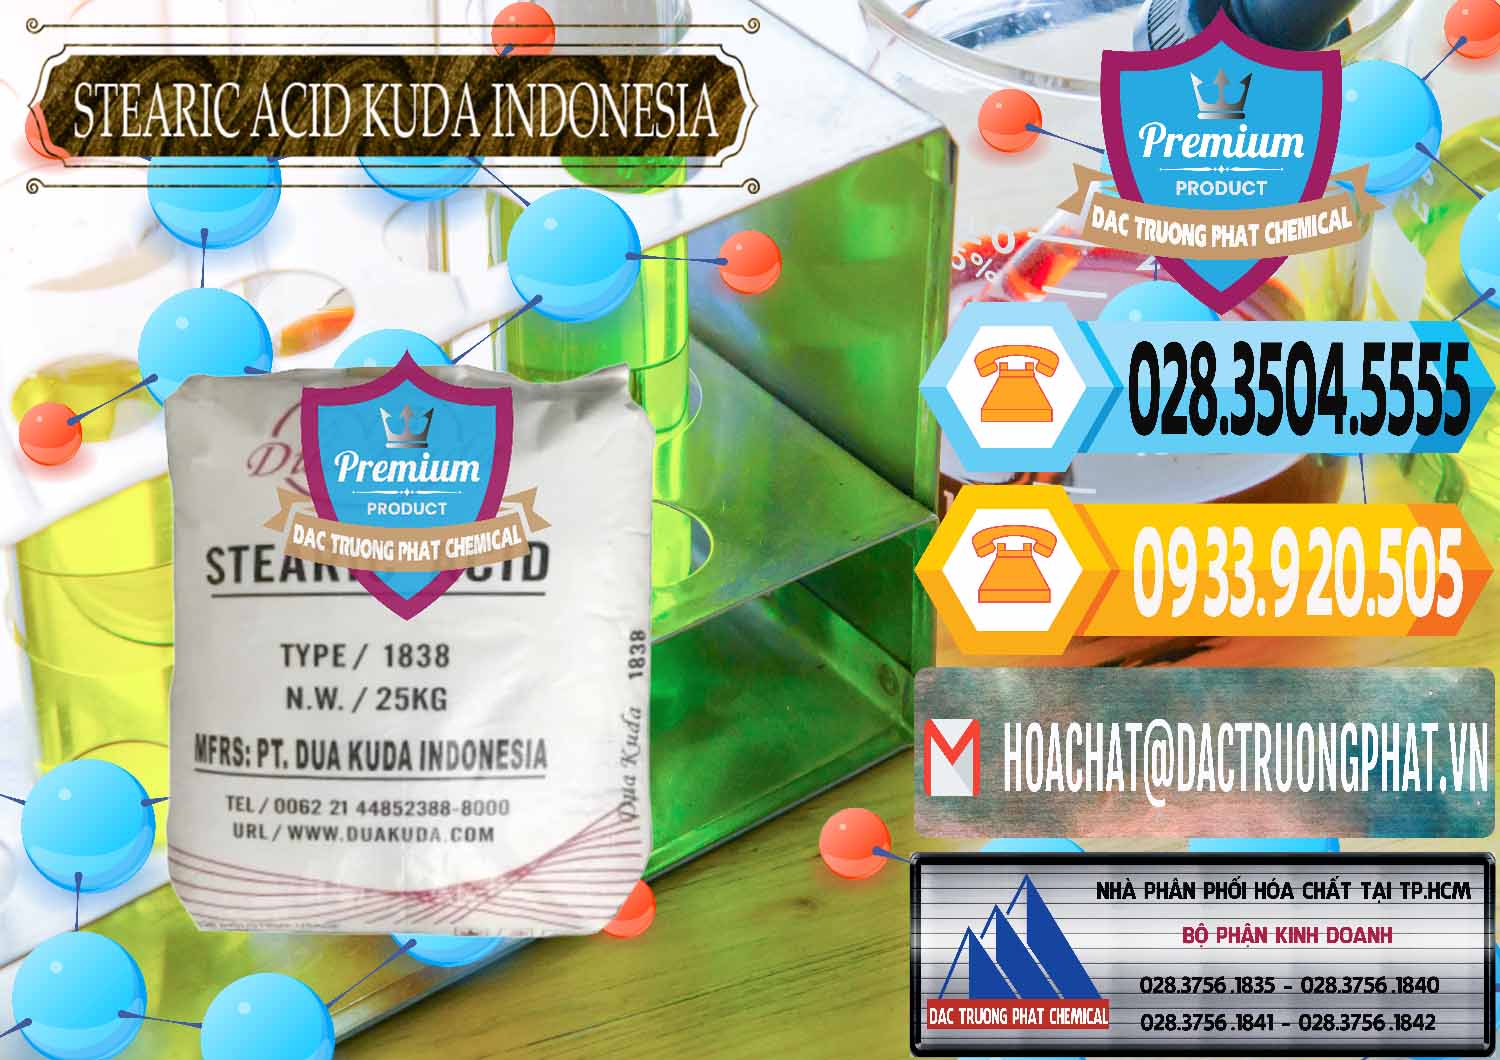 Đơn vị chuyên bán & cung cấp Axit Stearic - Stearic Acid Dua Kuda Indonesia - 0388 - Đơn vị cung cấp _ phân phối hóa chất tại TP.HCM - hoachattayrua.net